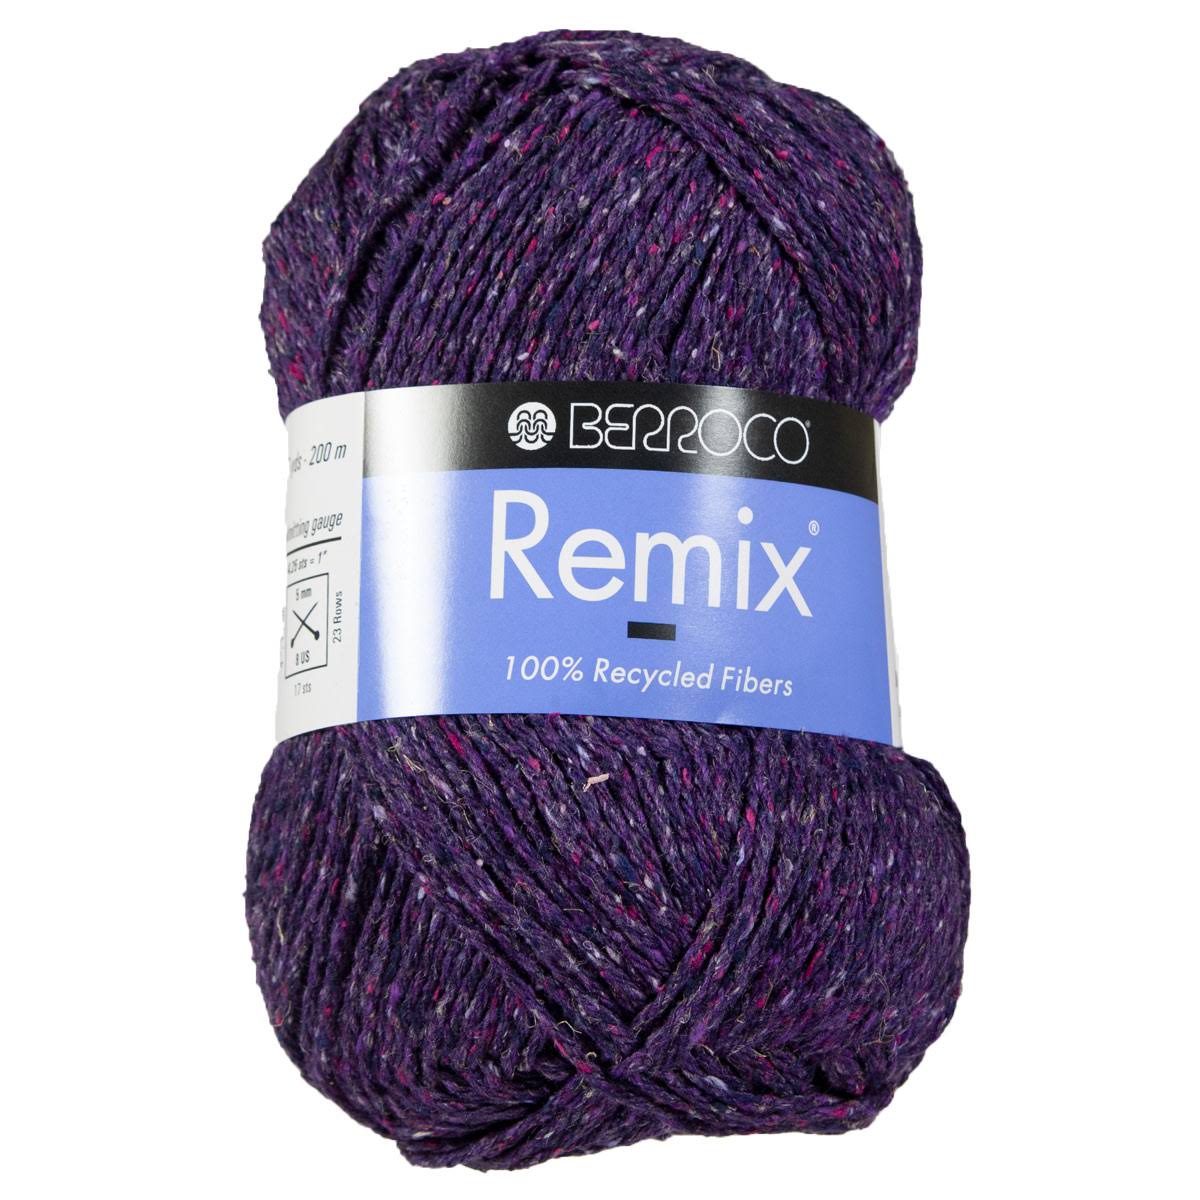 Berroco Remix Yarn - 3973 Eggplant